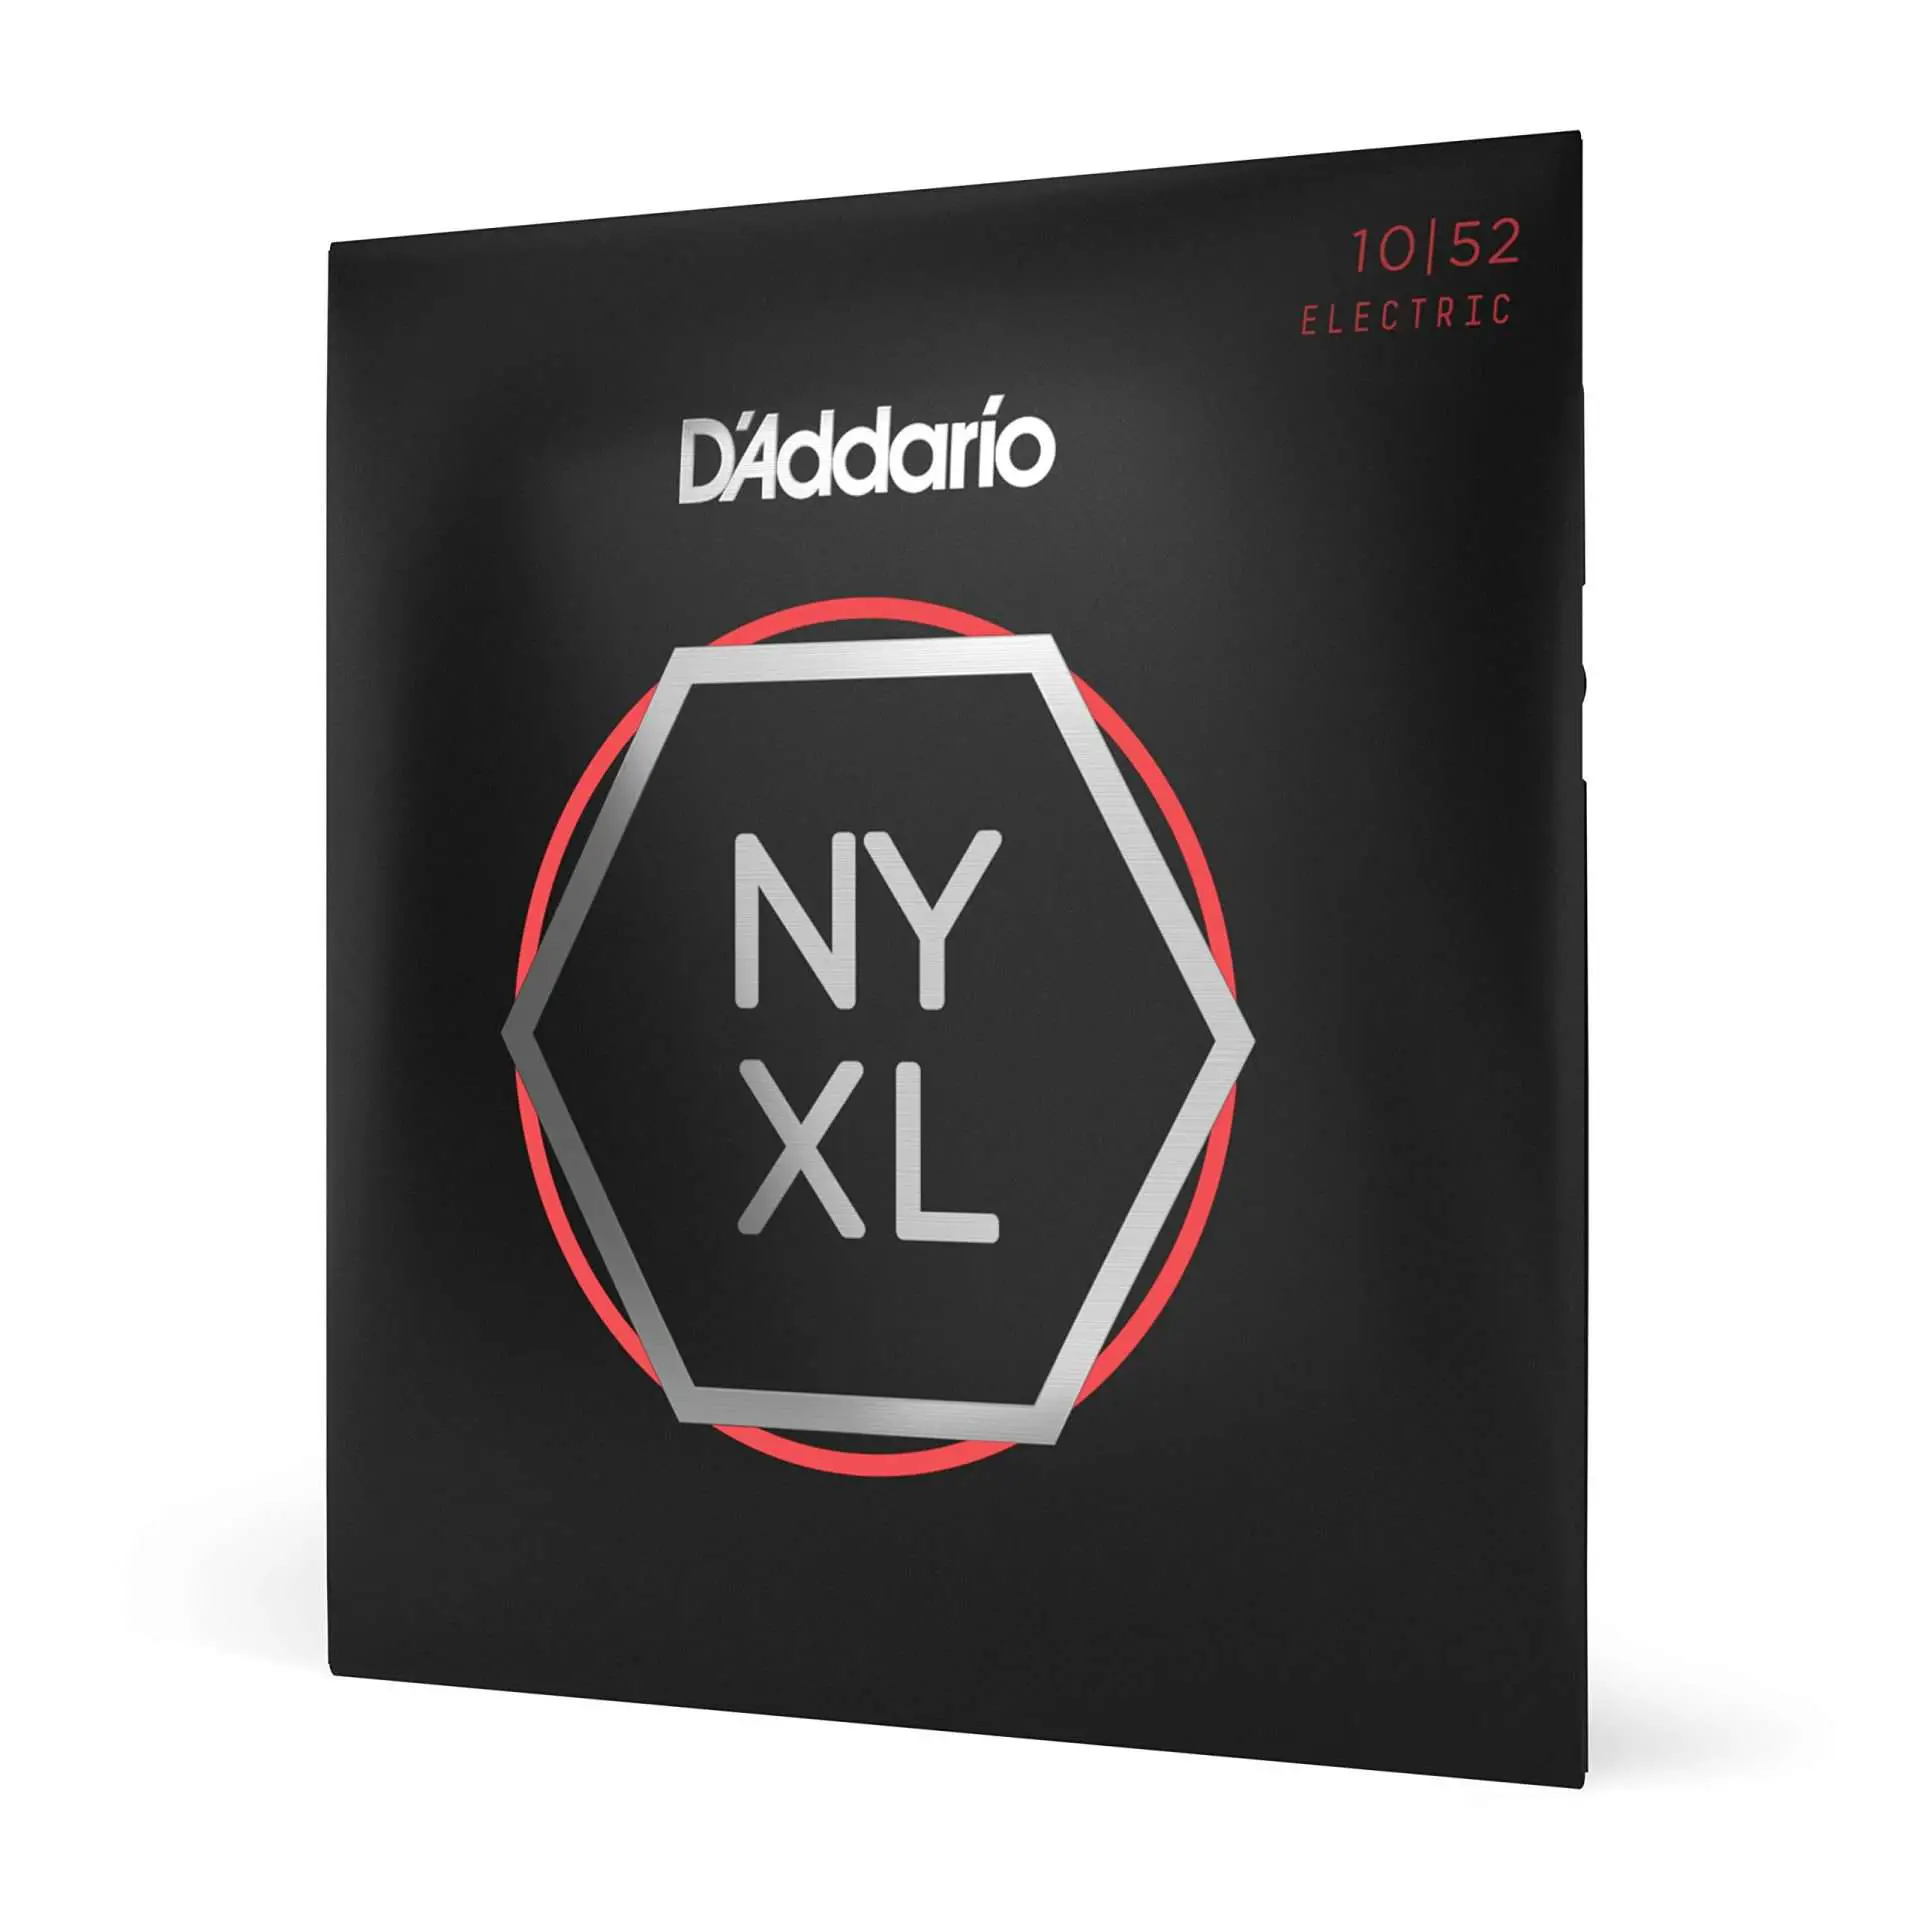 D'Addario "Light Top/Heavy Bottomm" NYXL Strings